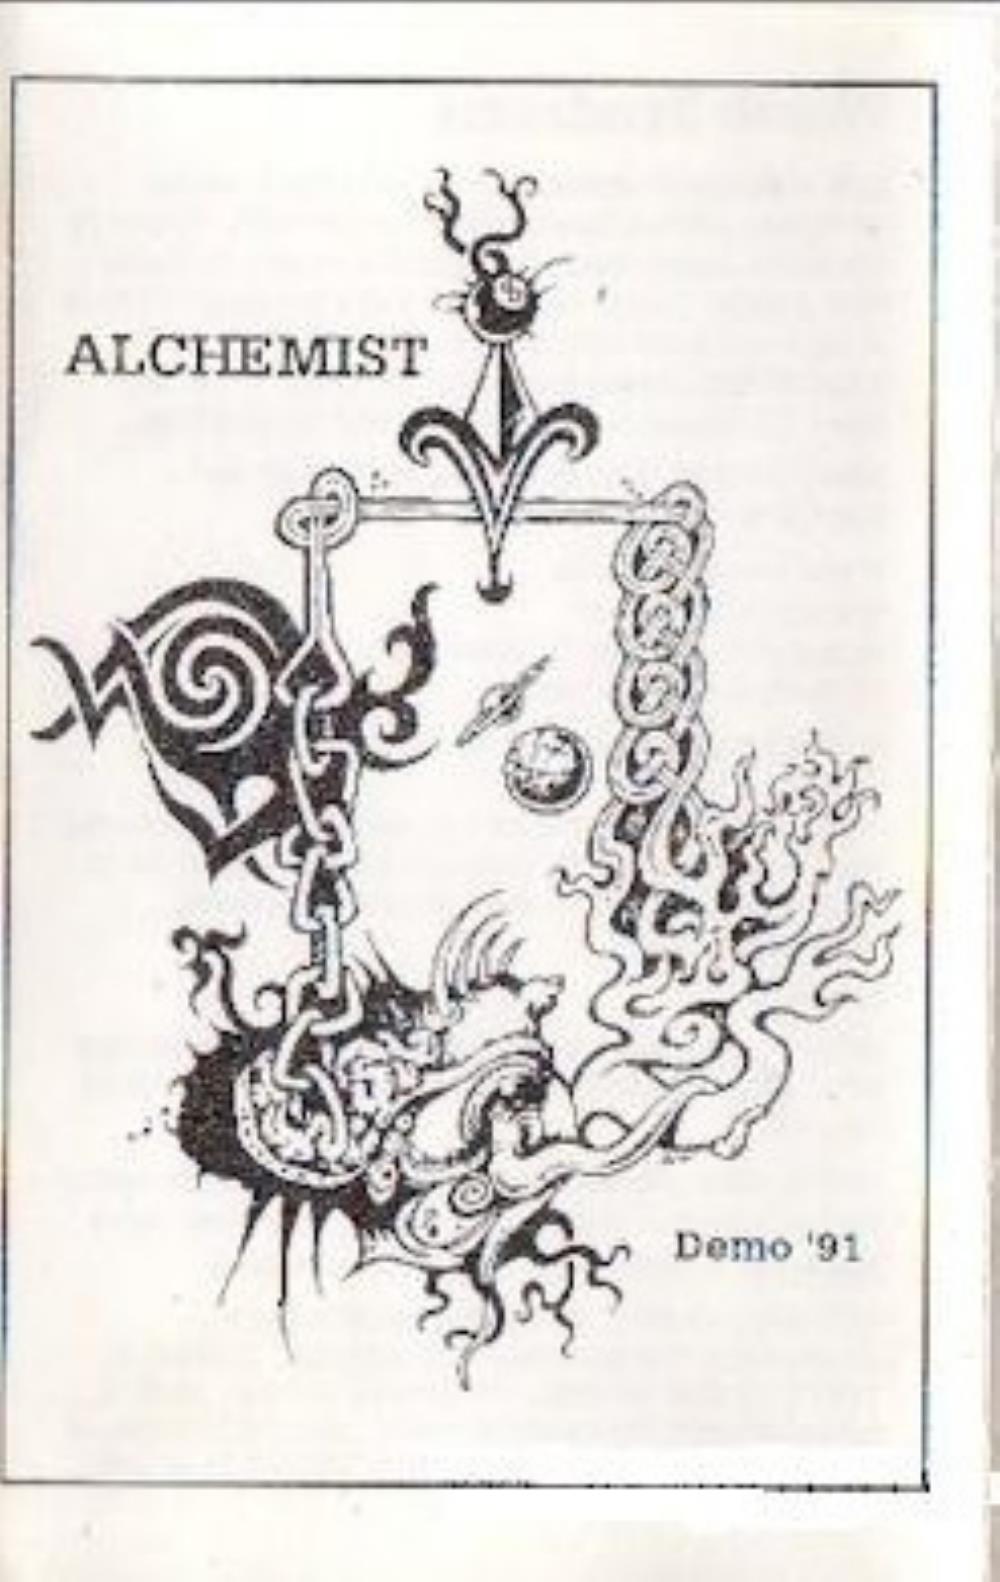 Alchemist Demo '91 album cover